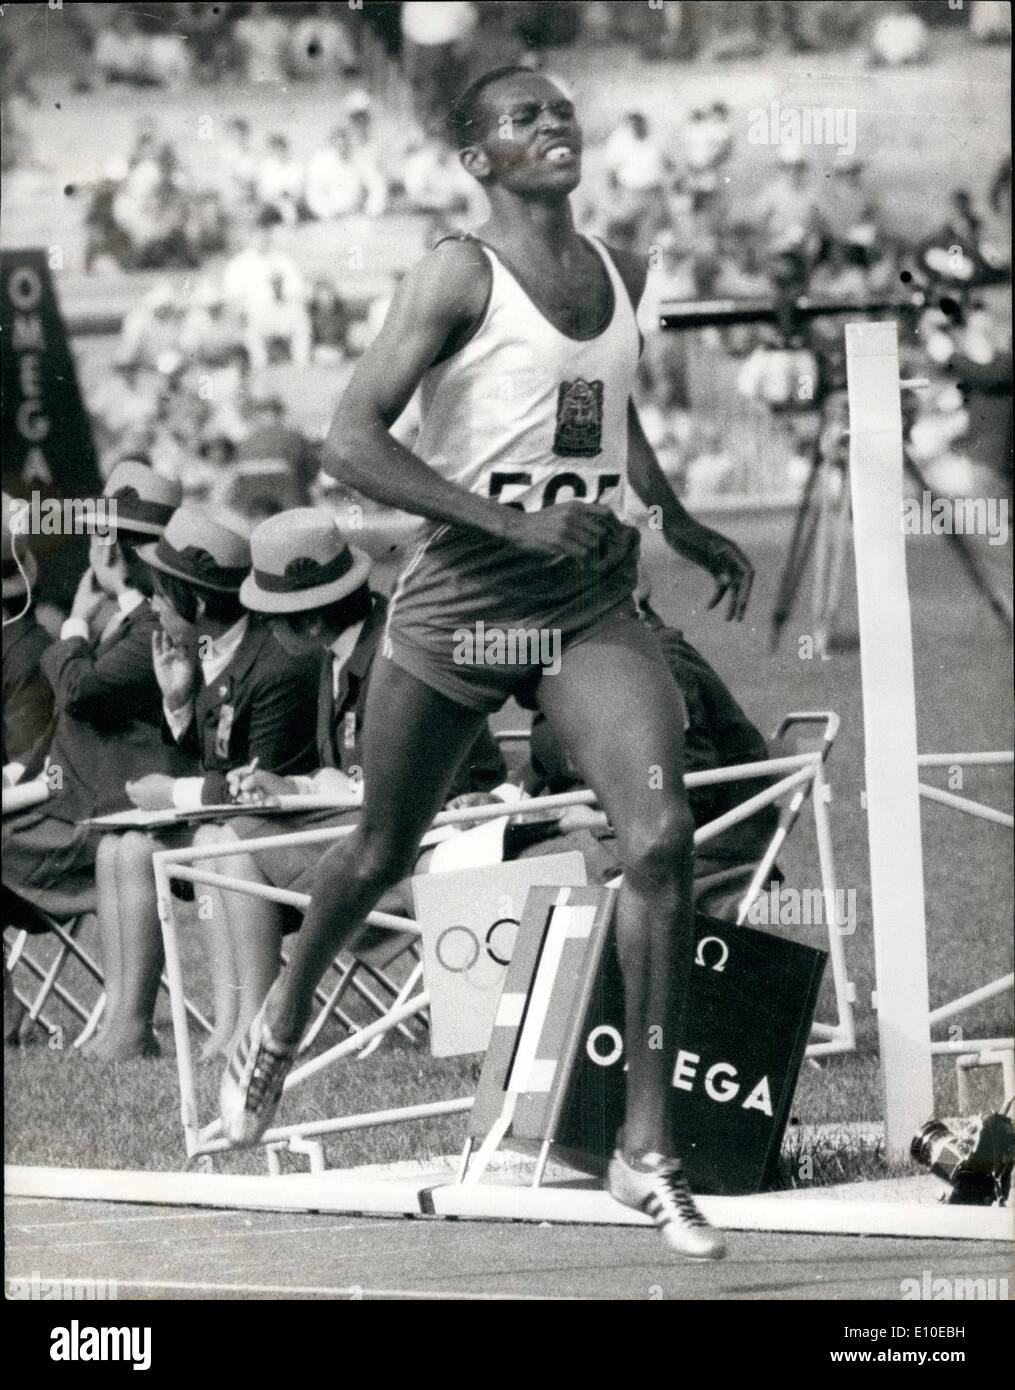 08 août 1972 - Kip Keino sur les Jeux Olympiques : Jomo Kenyatta Président a ordonné sa maison olympique si la Rhodésie est autorisé à rester dans les Jeux de Munich. Le Kenya a trois champions olympiques en titre, Kip Keino, (1500 mètres) Amos Biwott (3 000-mètres steeple) et Naftali Temu (10 000 mètres). Photo montre Kip Keino remportant la course de 1 500 mètres au Mexique 1968. Banque D'Images